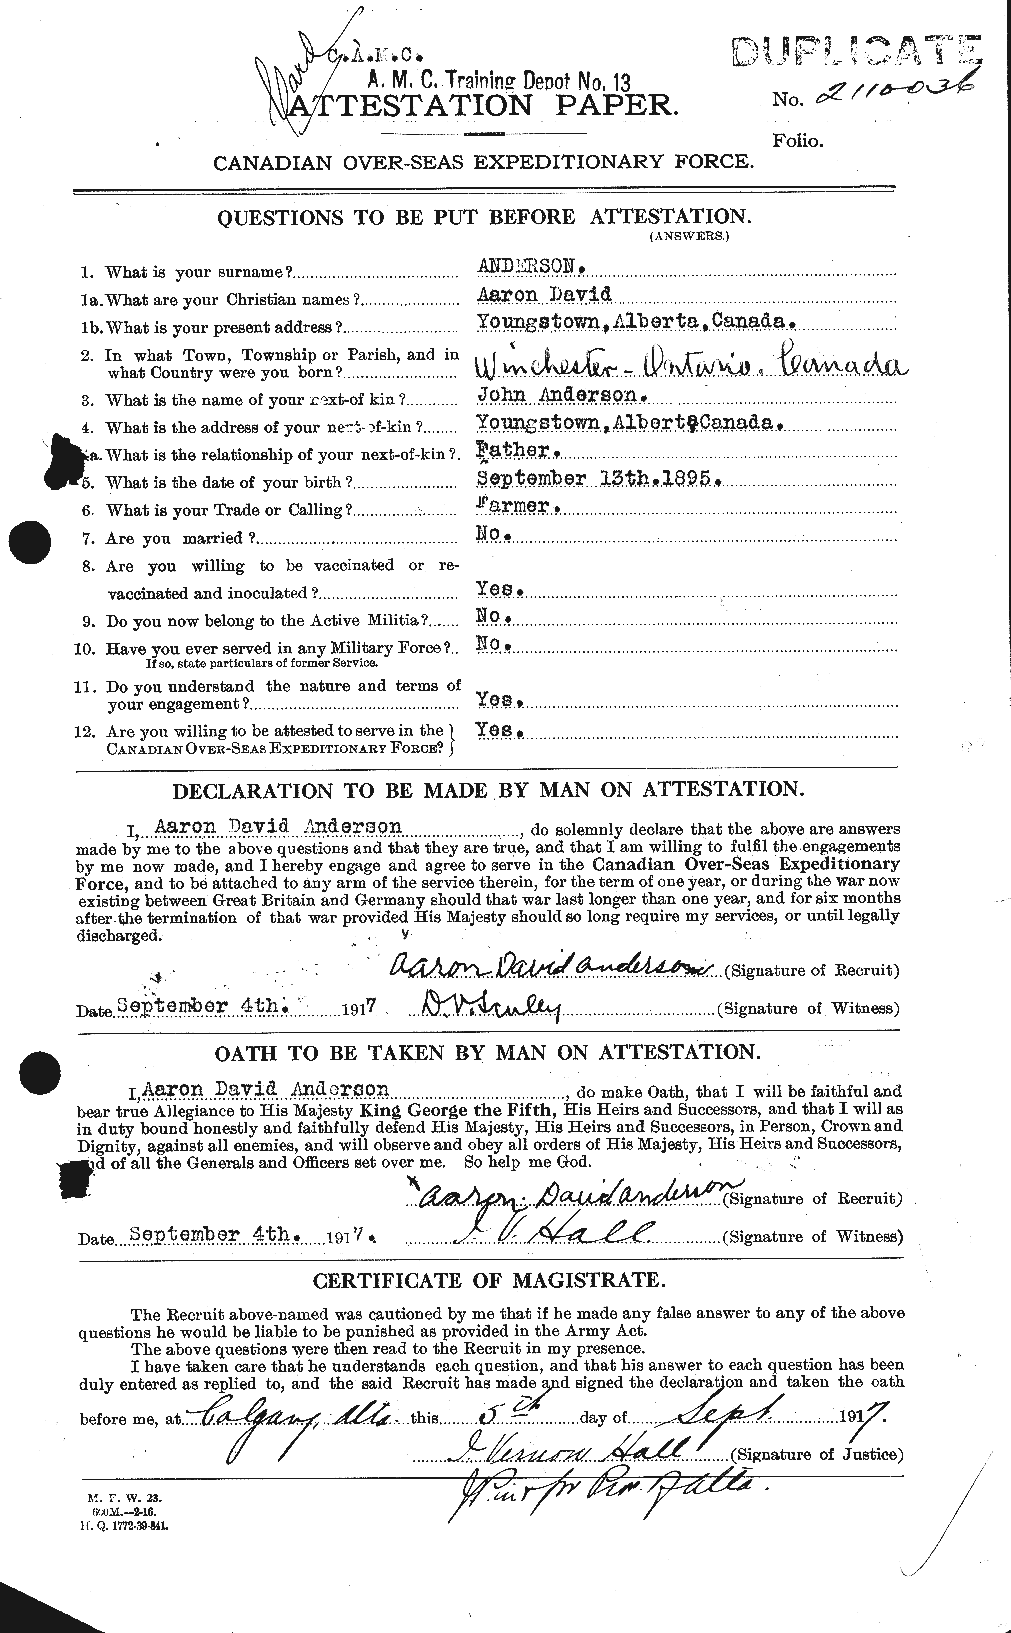 Dossiers du Personnel de la Première Guerre mondiale - CEC 209584a